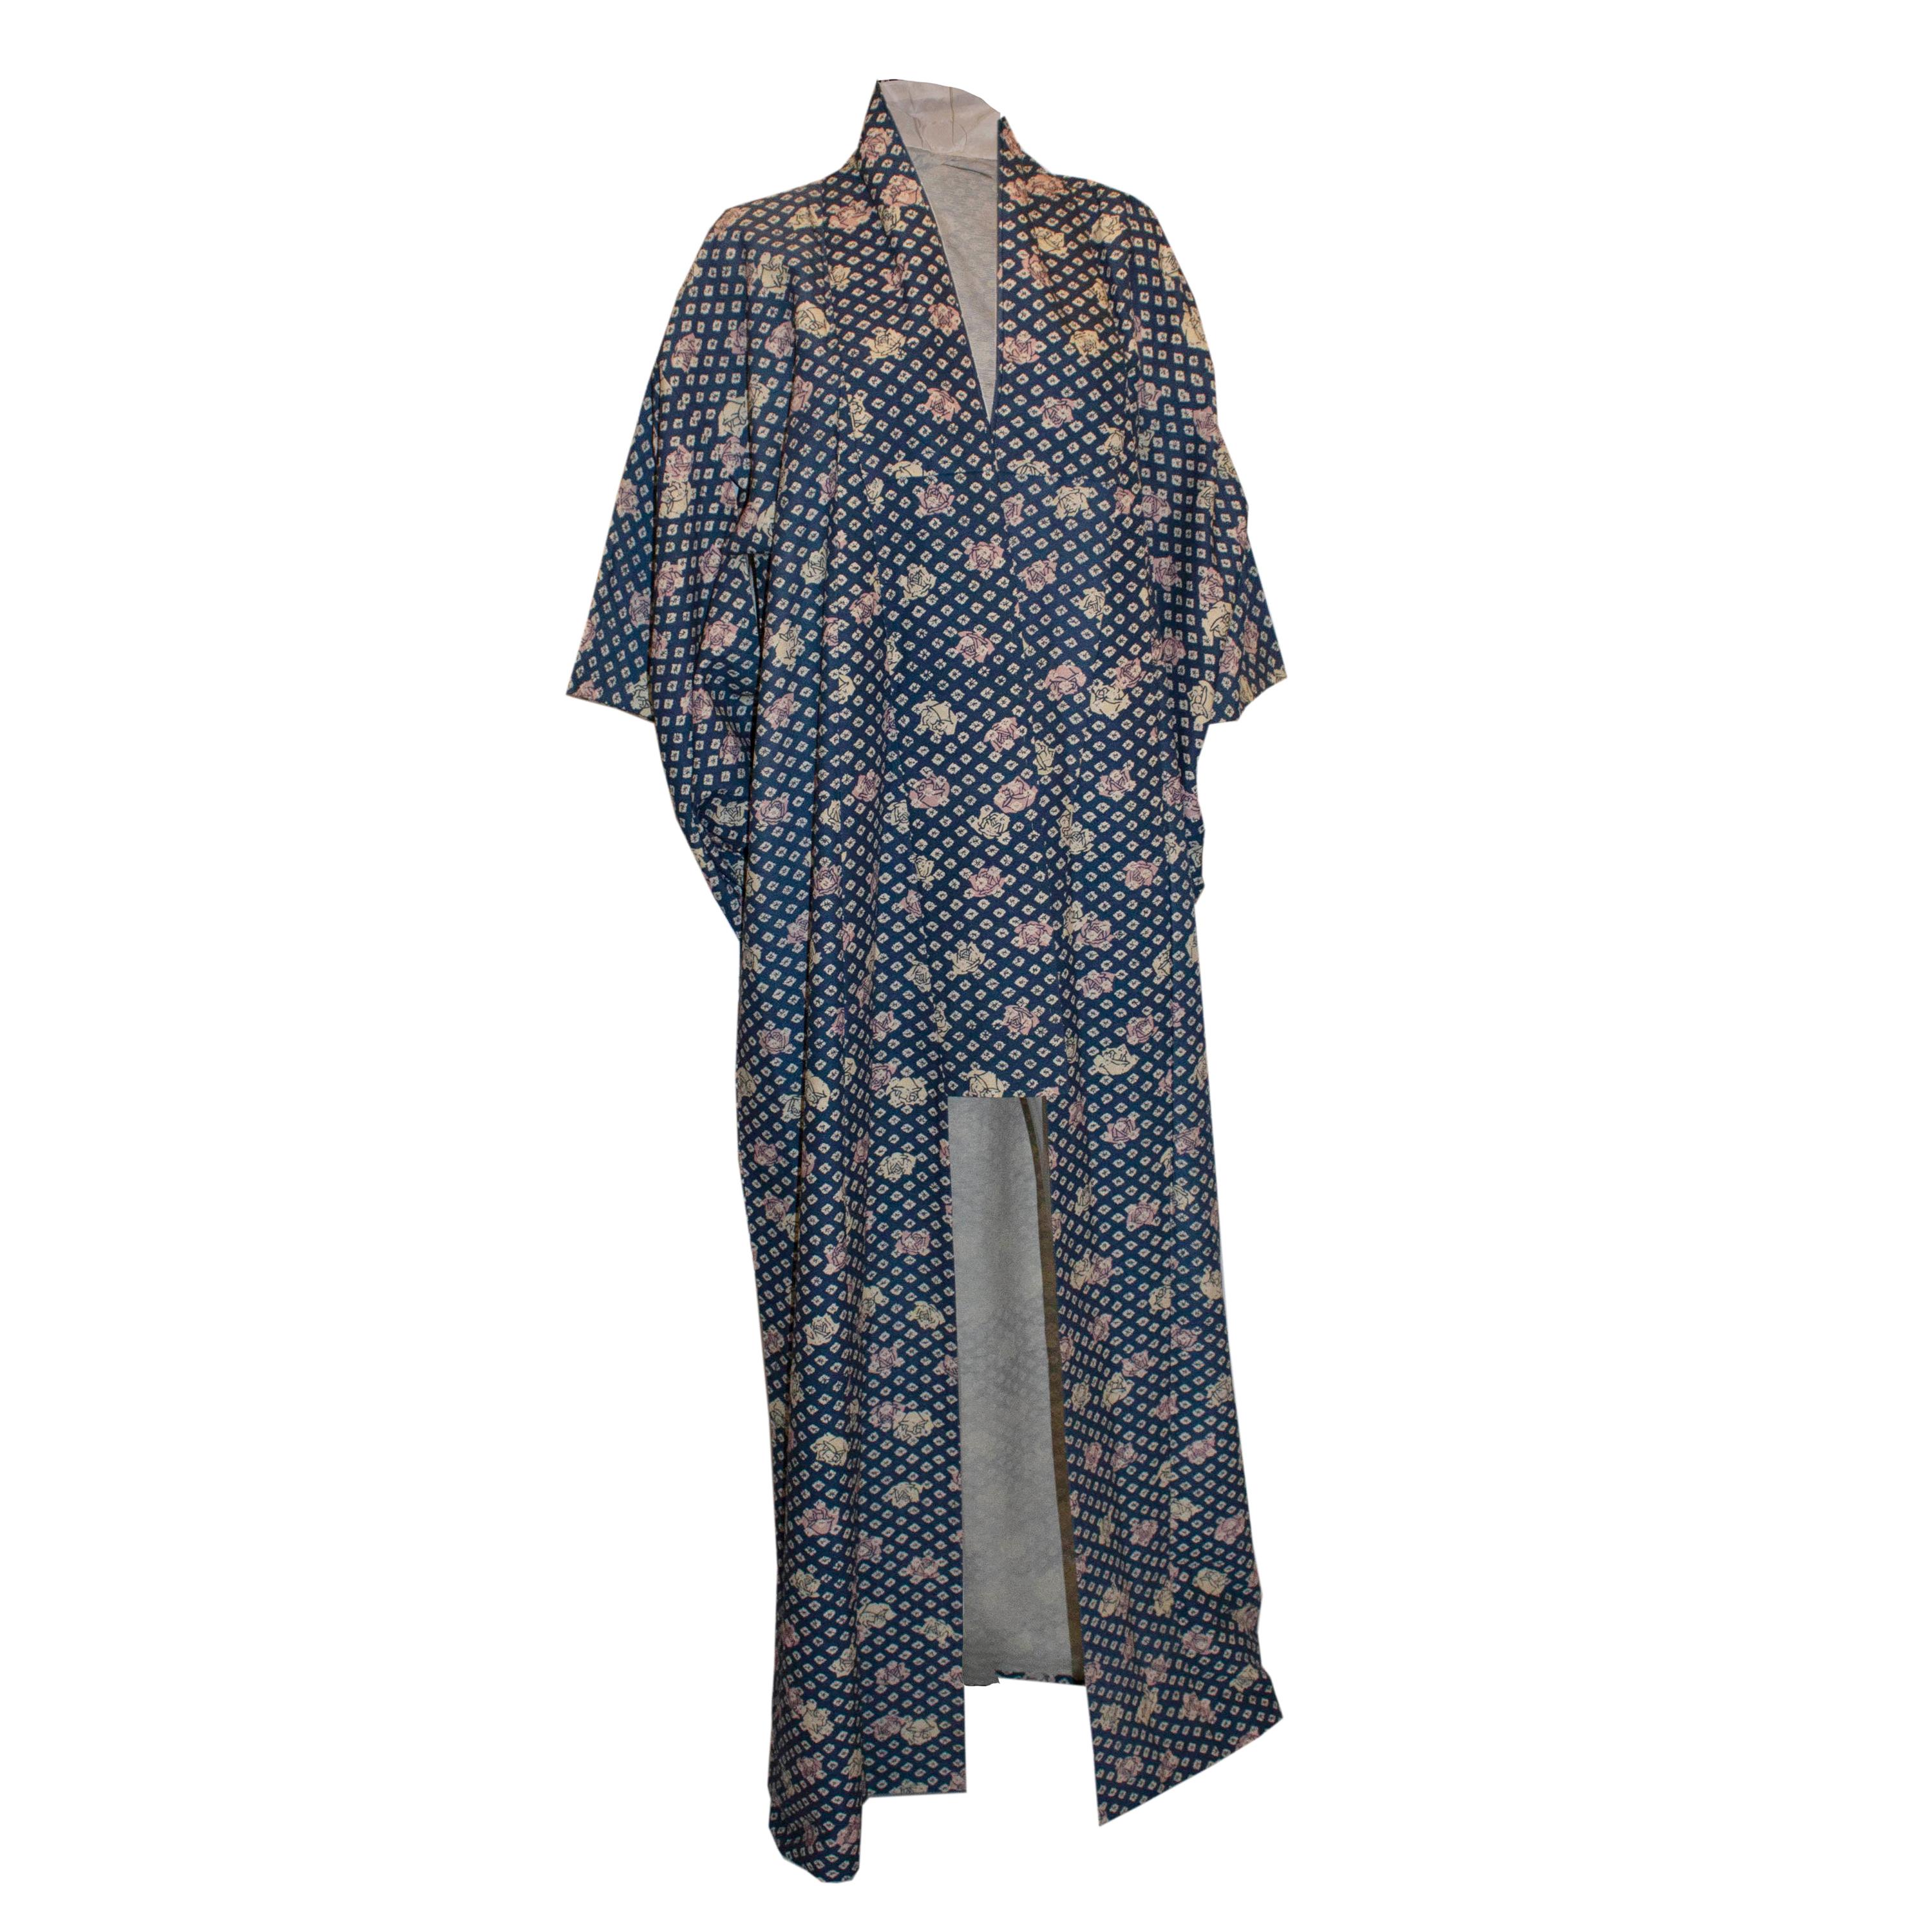 Langer blauer Kimono mit Rosendetails